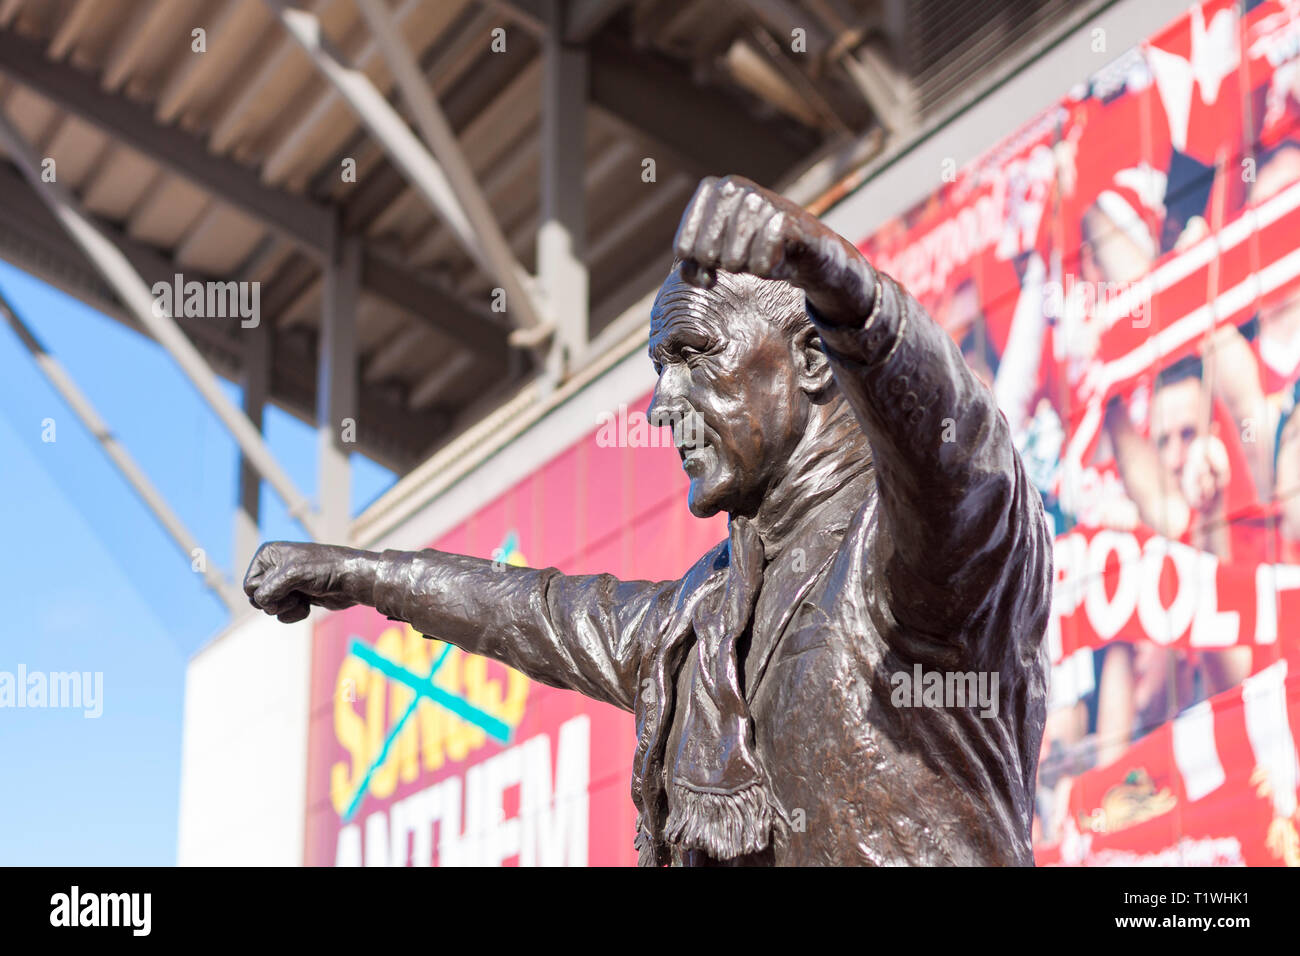 Bronzestatue von Bill Shankly, ehemaliger Manager des FC Liverpool, außerhalb Anfield Stadion, Liverpool, Merseyside, UK. Stockfoto